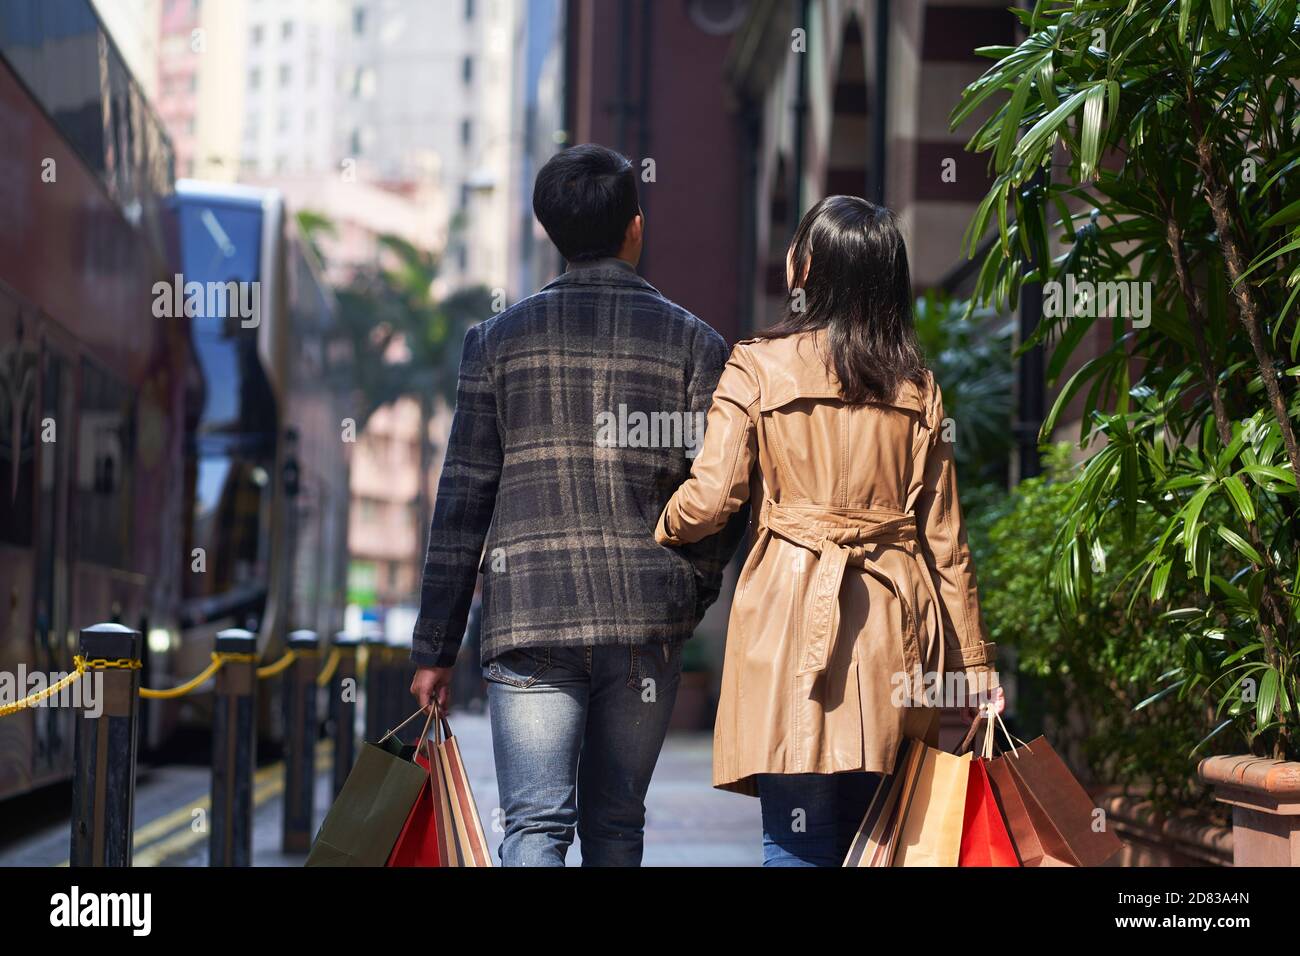 vue arrière de jeune couple asiatique marchant dans la rue avec sacs à provisions dans les mains Banque D'Images